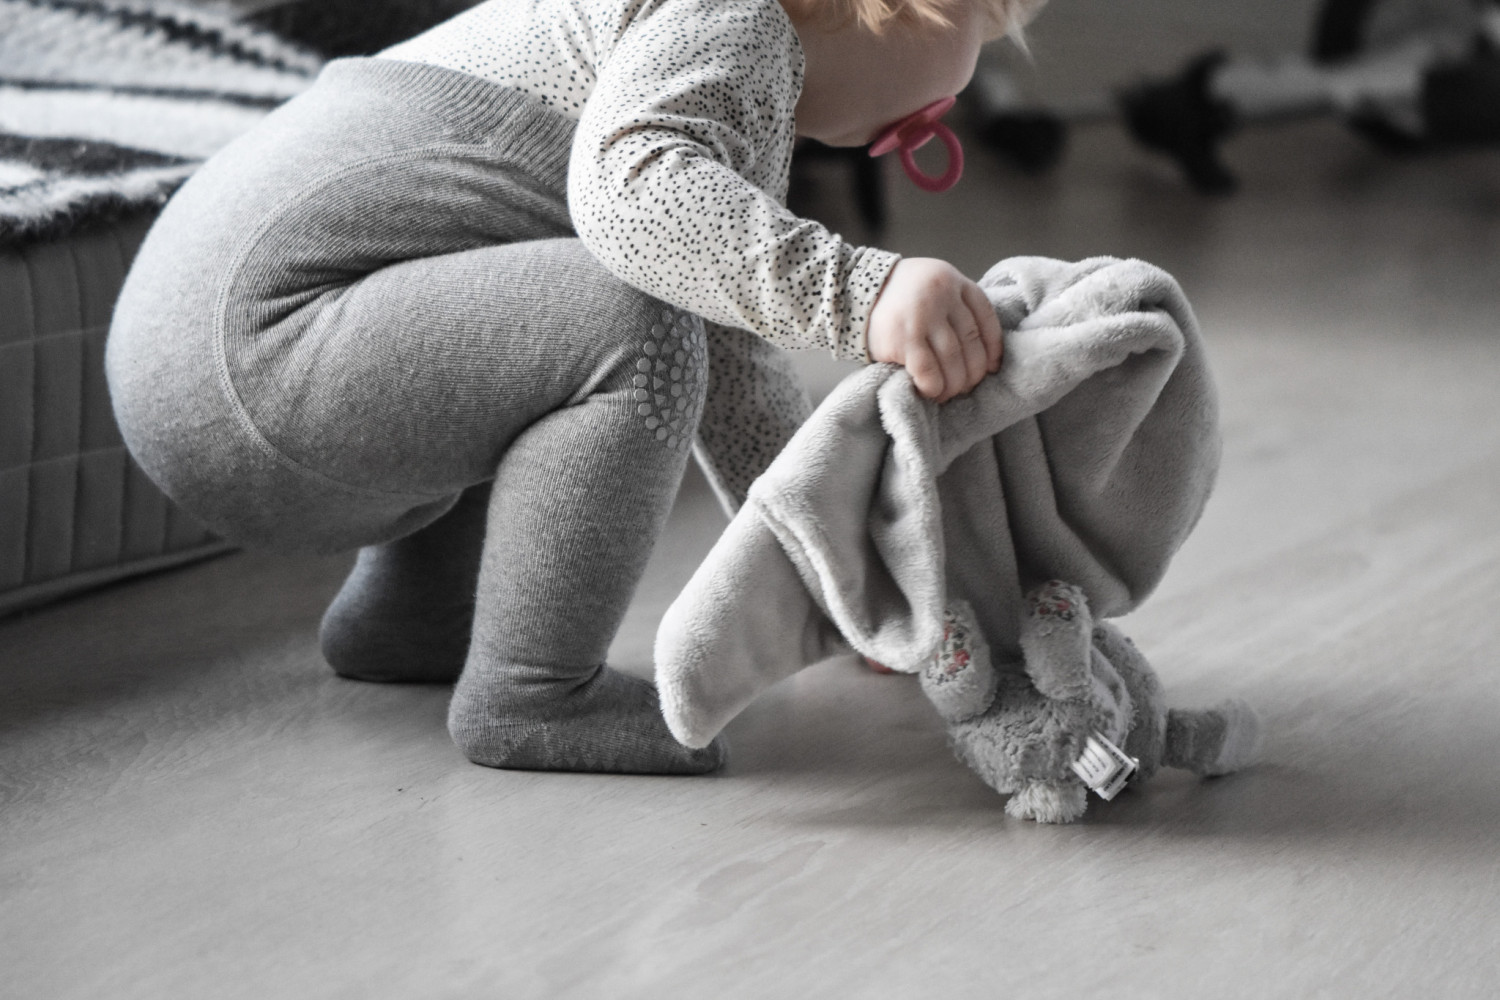 TEST af danske GoBabyGo (strømper og strømpebukser mv.) | Baby |  Testfamilien